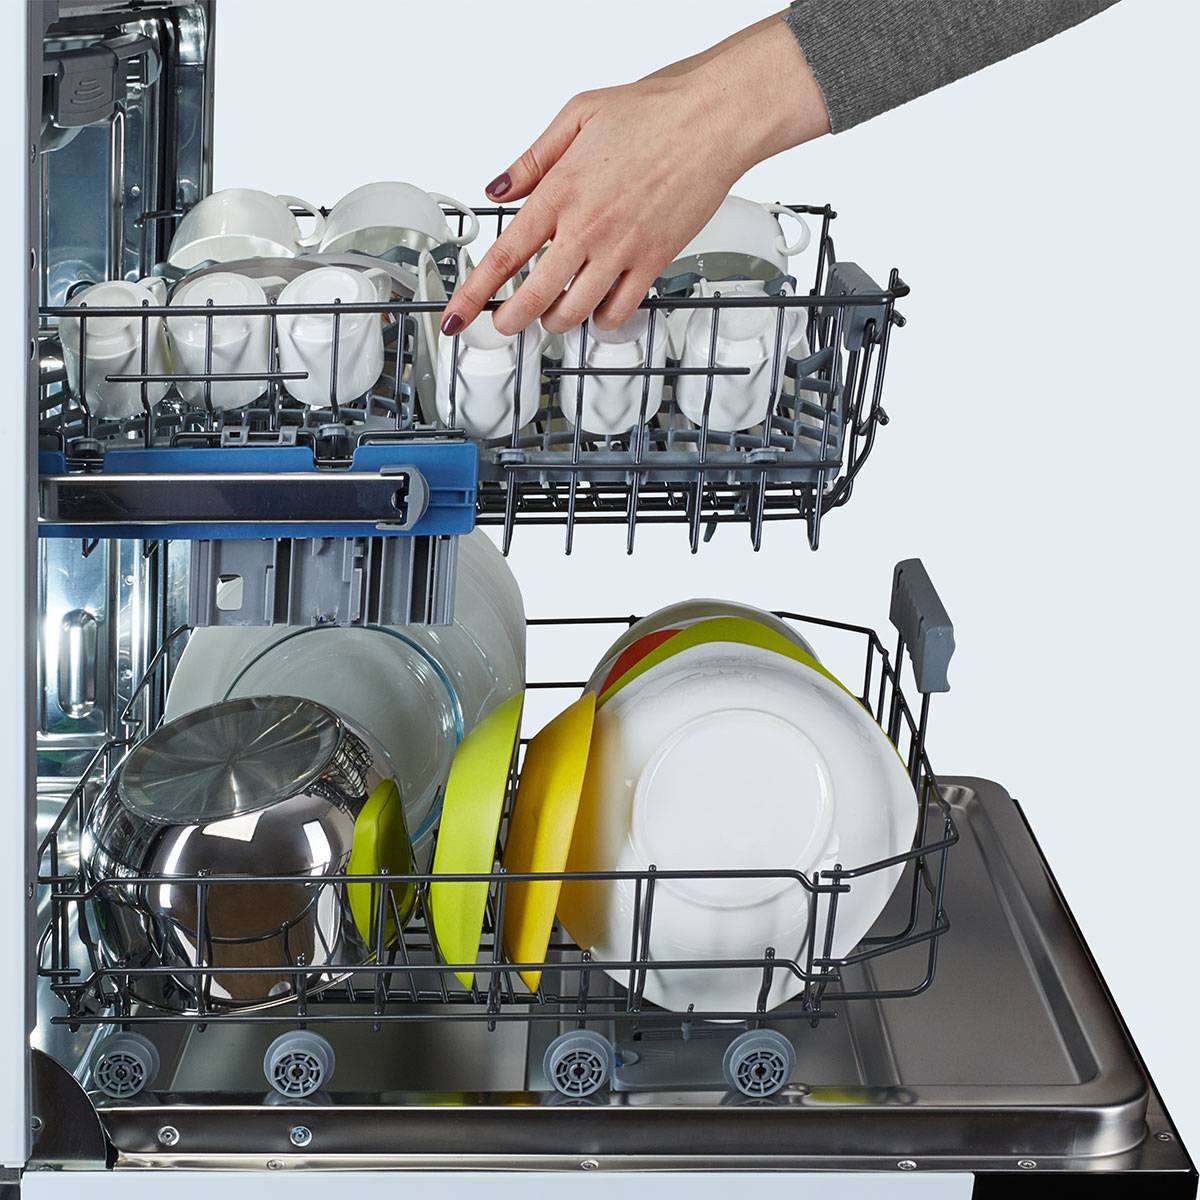 Как правильно загрузить посудомоечную машину: почему это так важно, советы и рекомендации из личного опыта, как правильно расставить посуду, сколько добавлять моющих средств и какие приборы мыть нельз